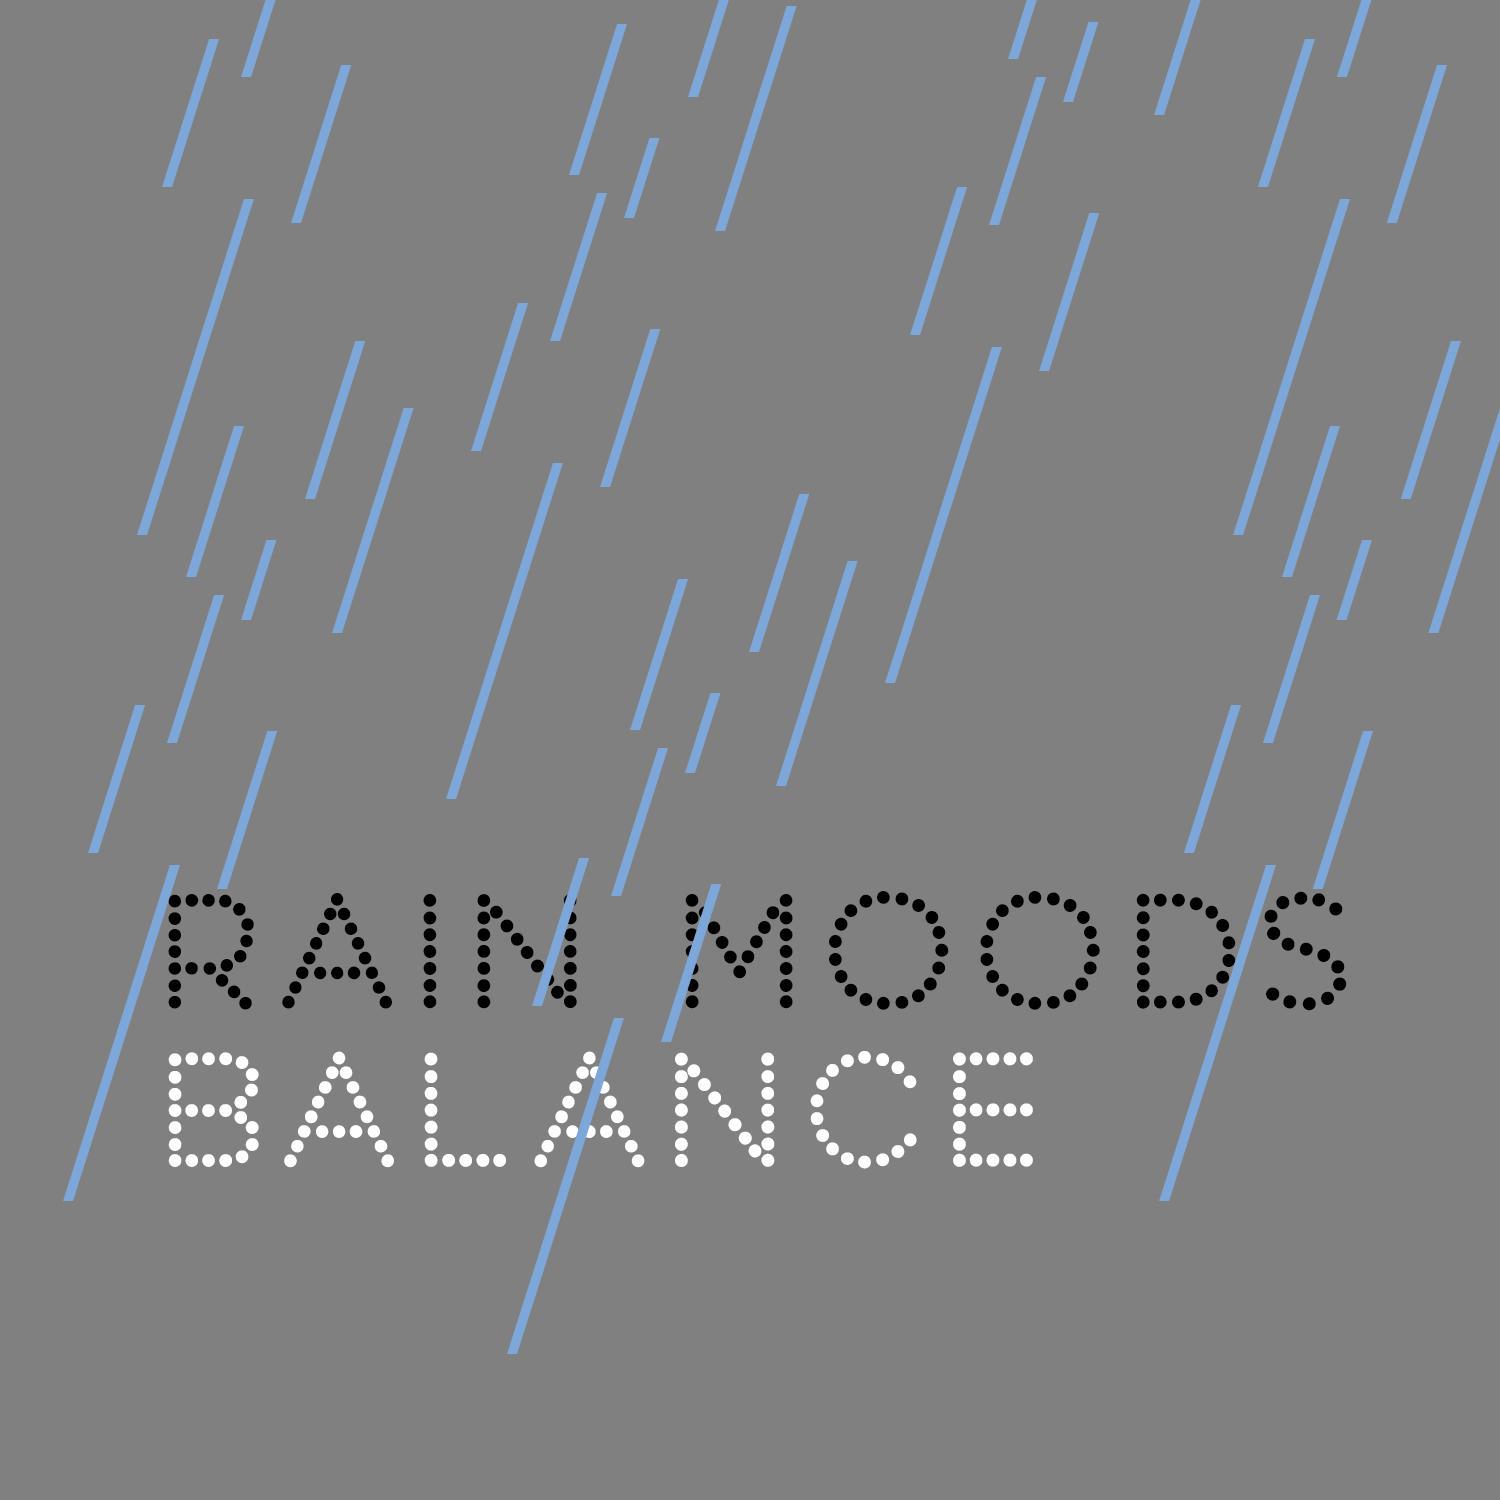 Rain Moods: Balance